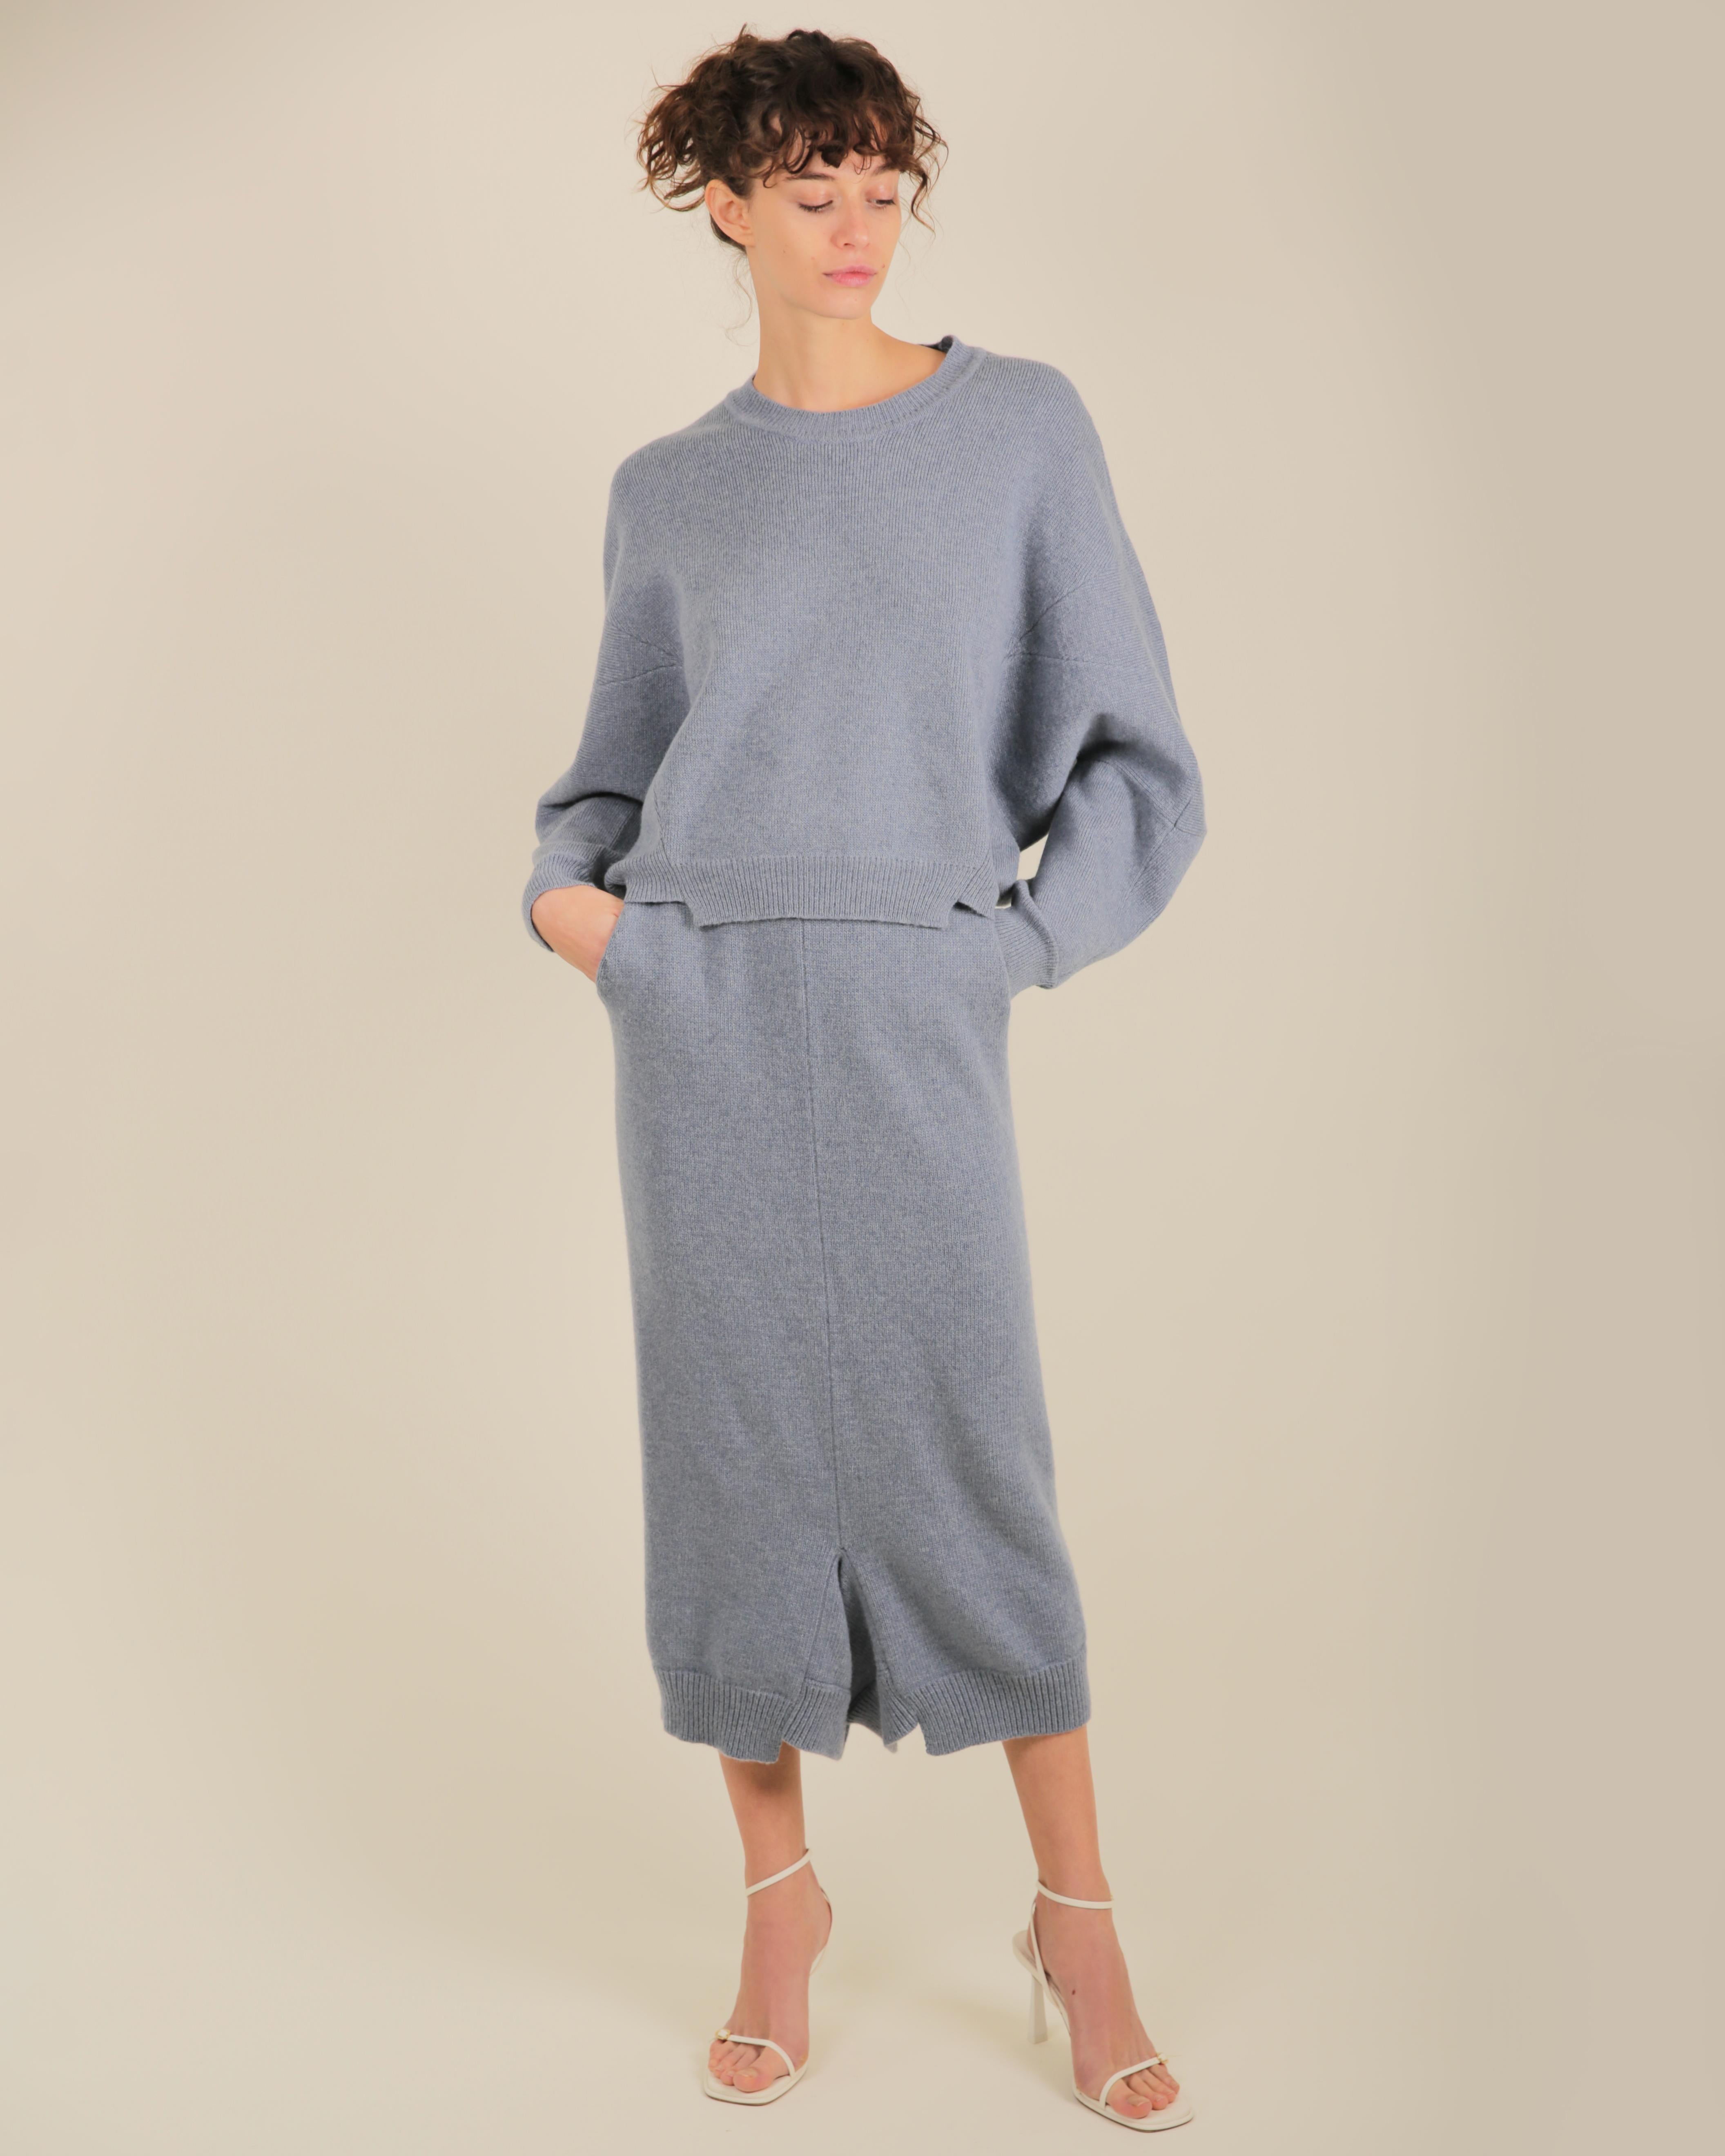 Stella McCartney Fall18 blue oversized wool alpaca matching sweater dress pants For Sale 6